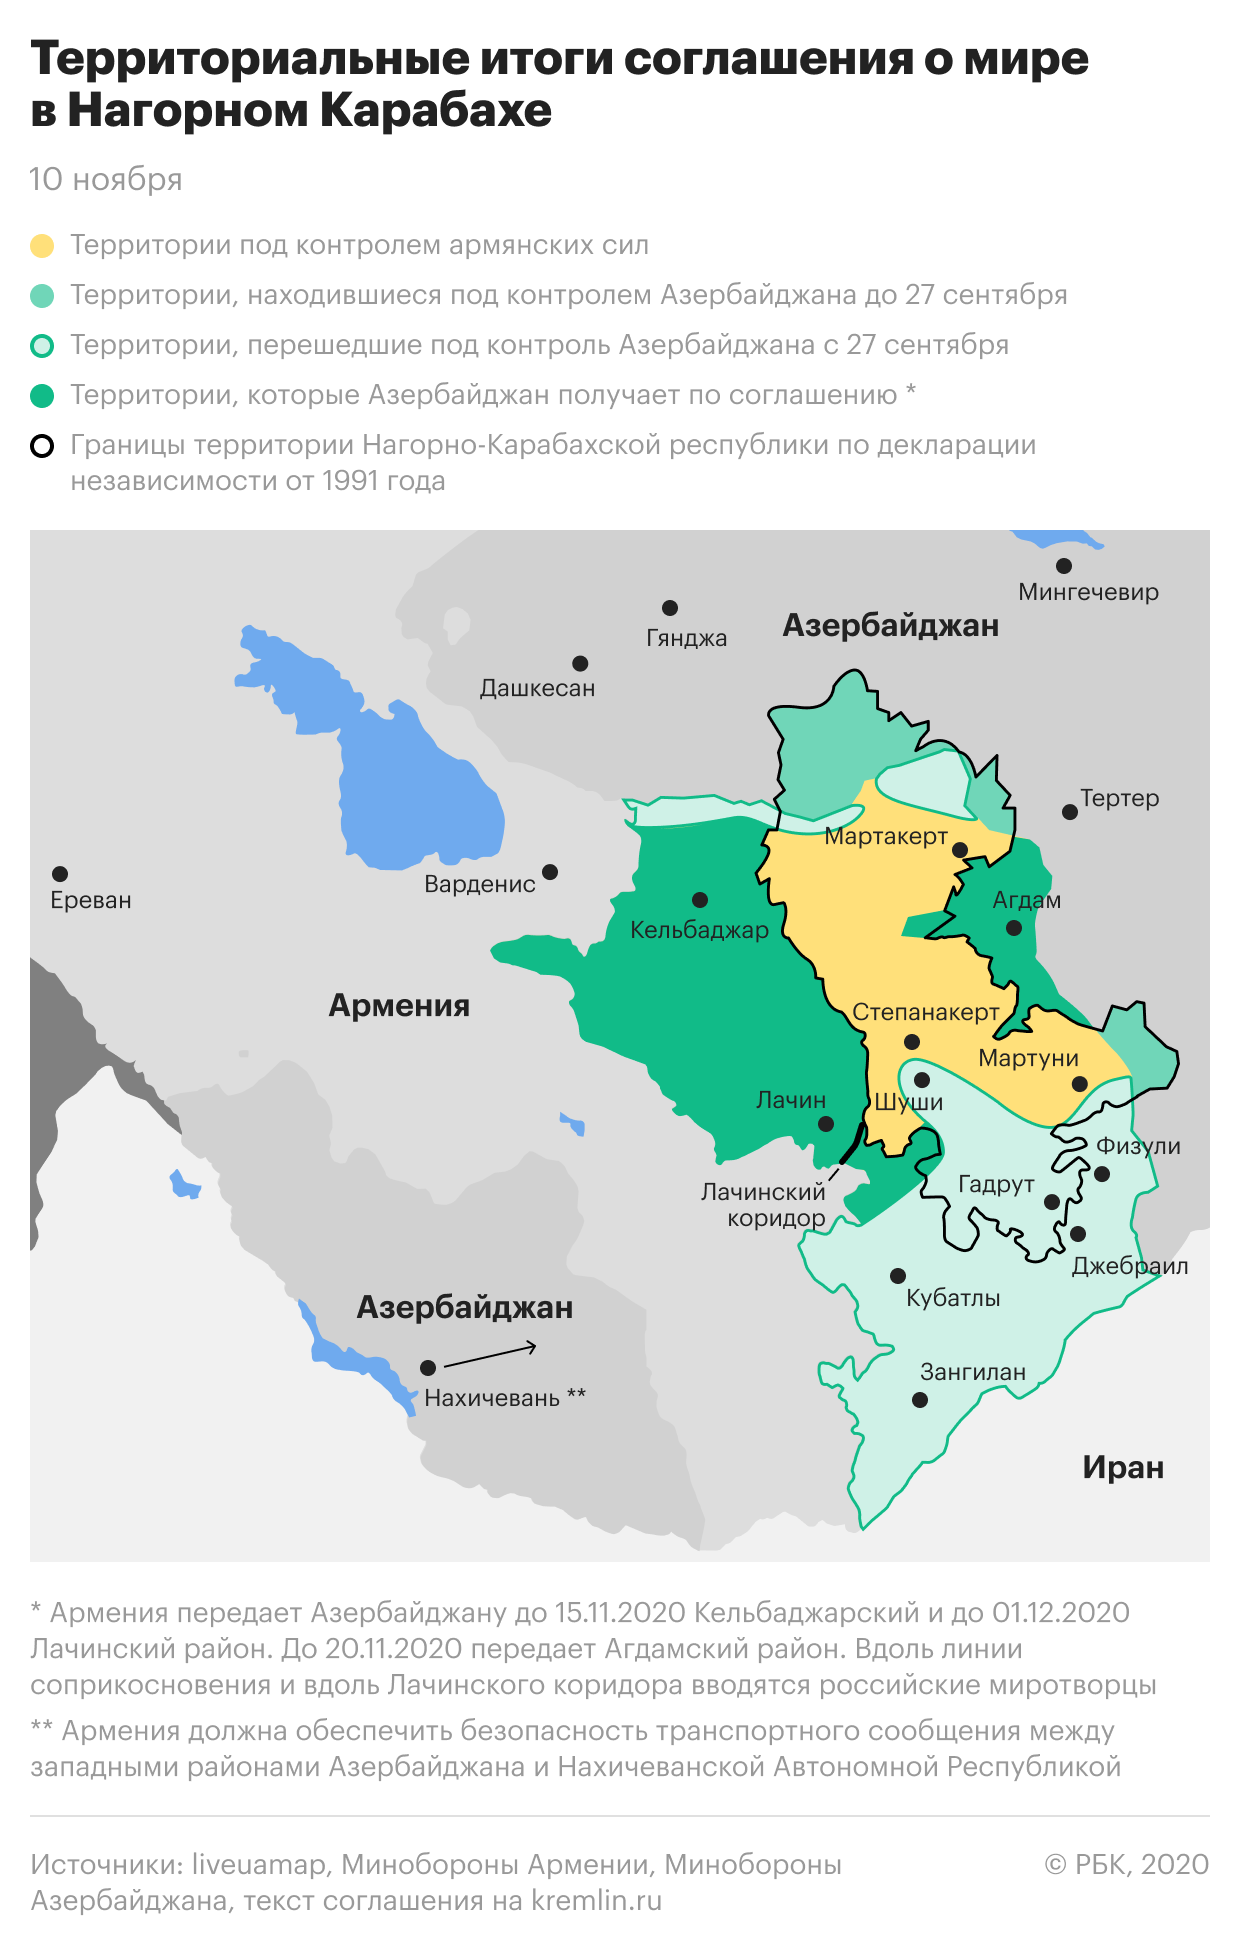 Стало известно, какие территории Карабаха получит Азербайджан по соглашению об окончании войны. Инфографика: РБК